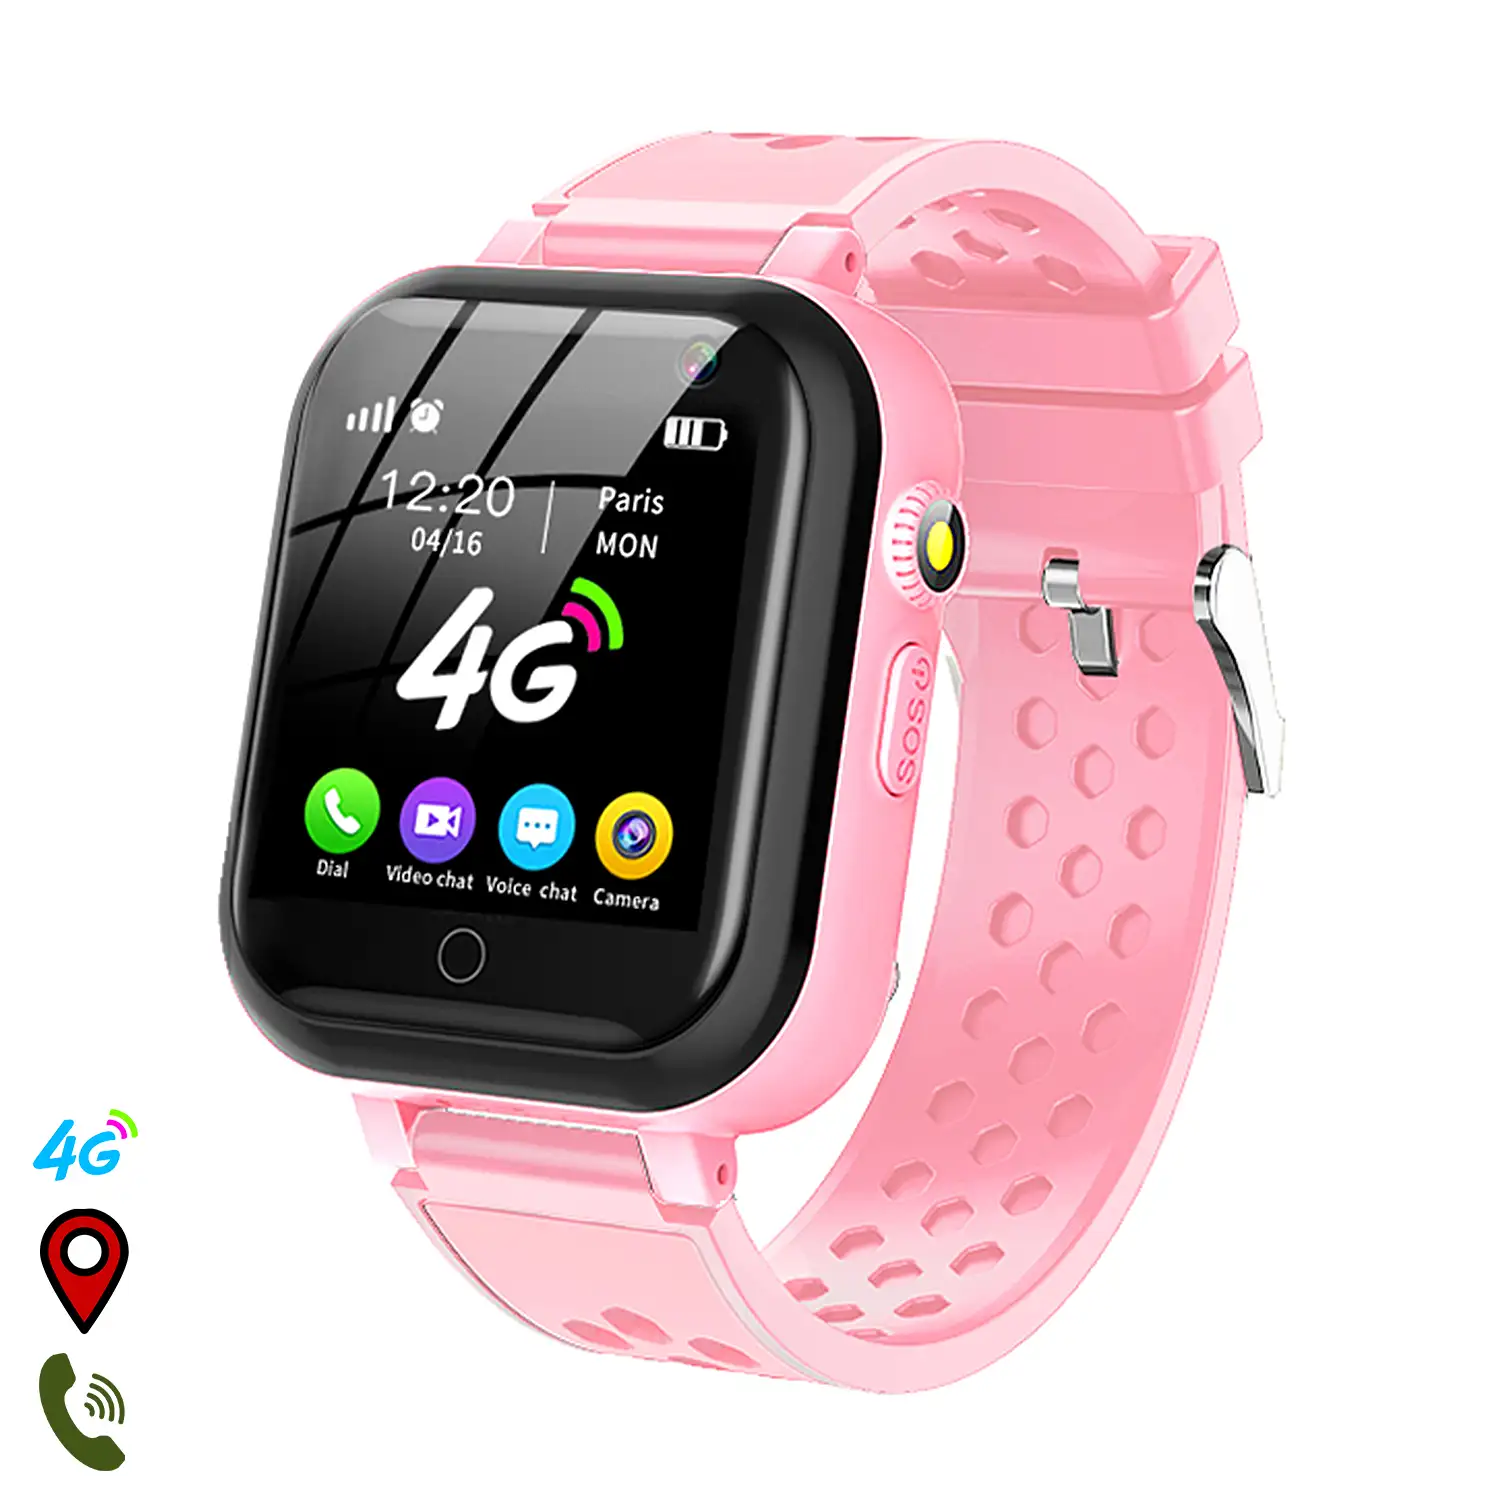 Smartwatch T16 4G localizador GPS,Wifi y LBS. chat, botón SOS.